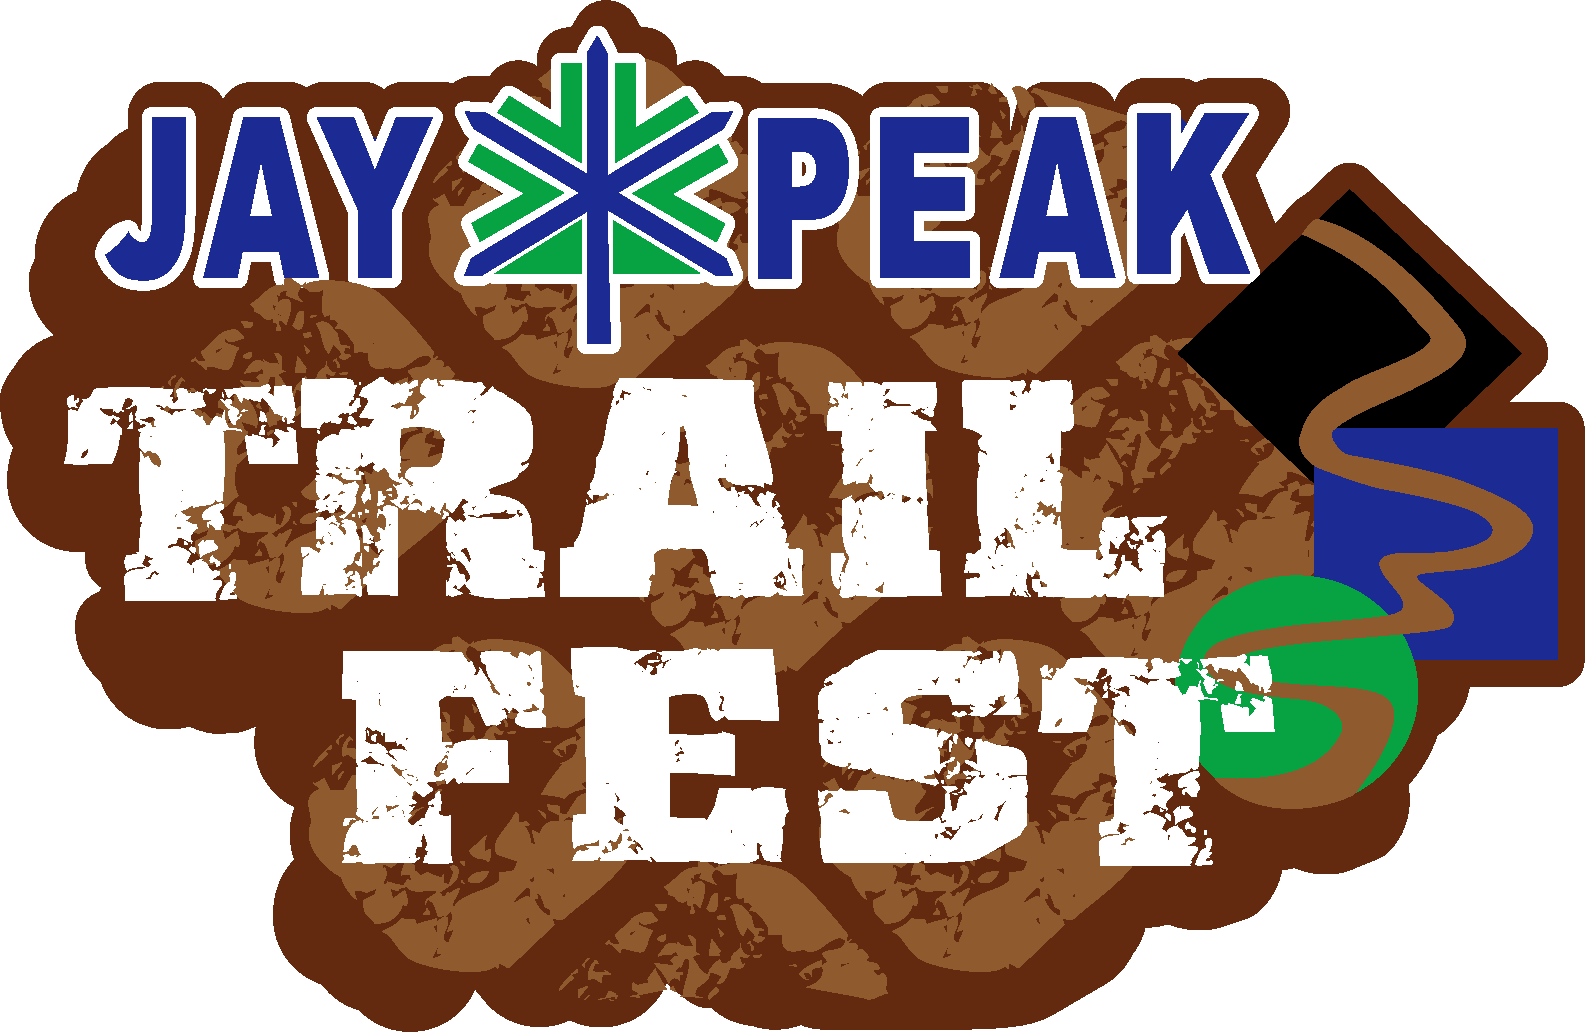 Jay Peak Trail Running Festival logo on RaceRaves